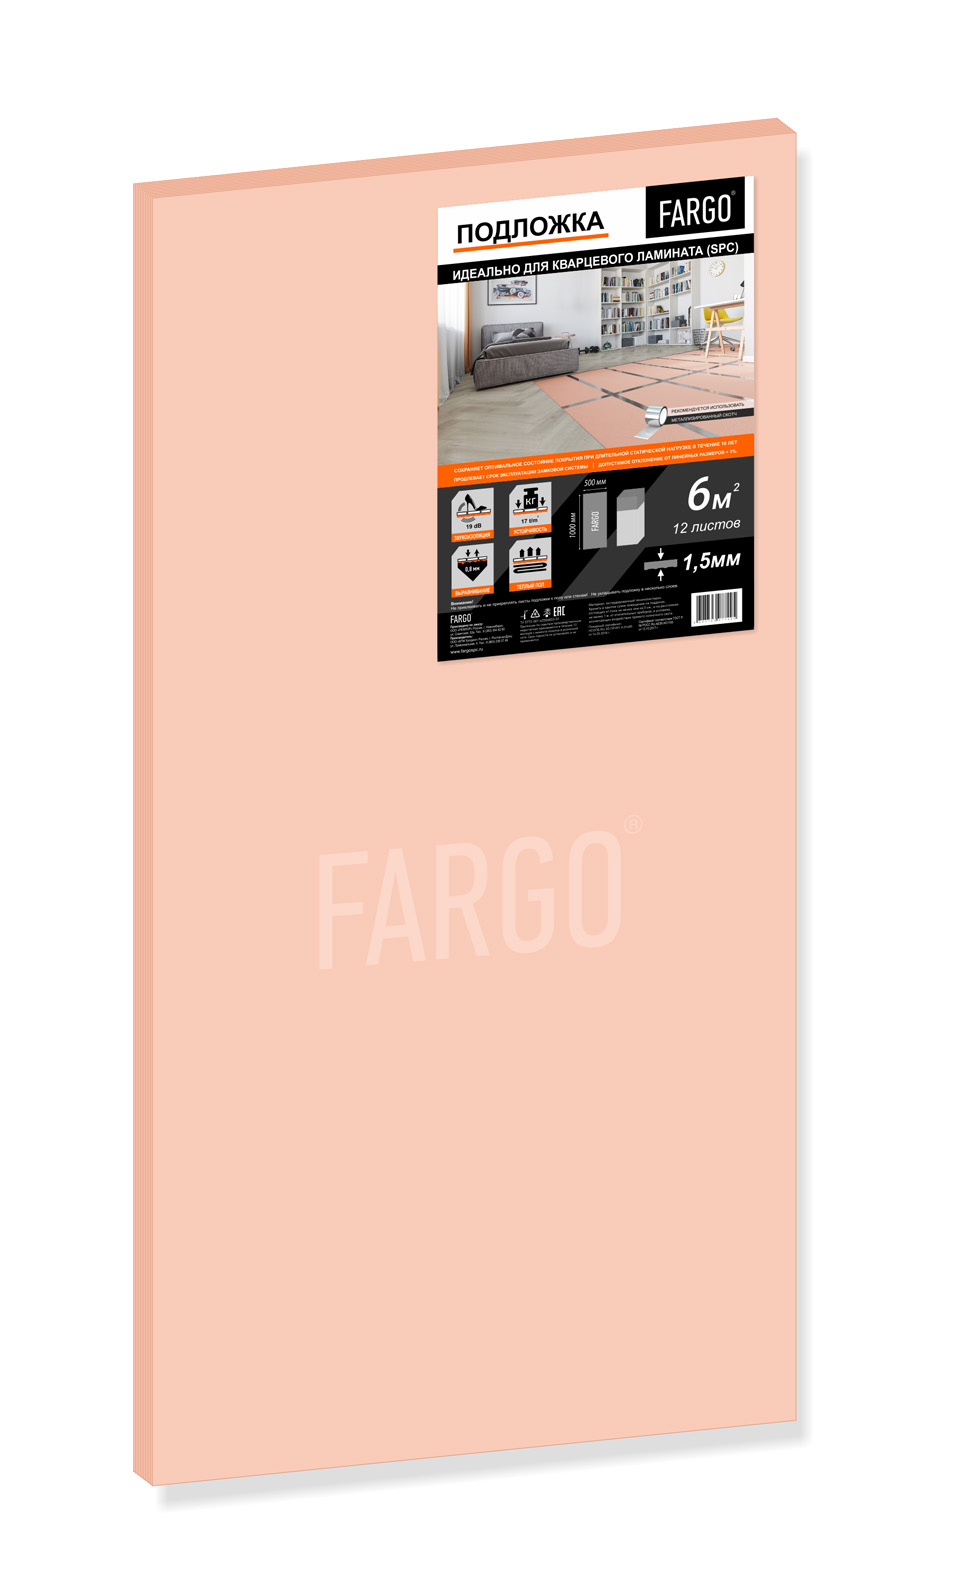 Подложка Fargo для кварцевого ламината